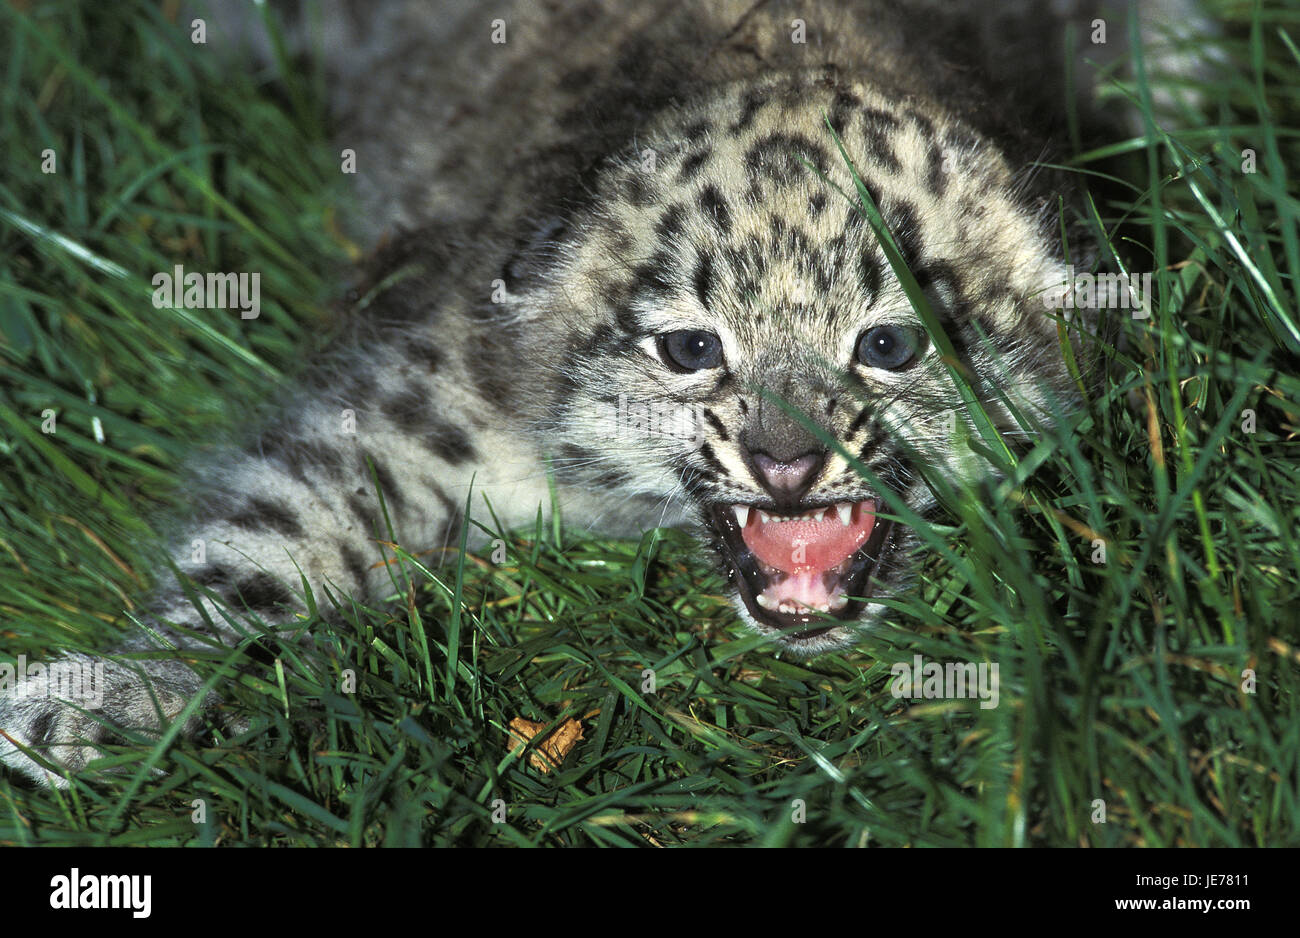 Snow Leopard o Irbis, Panthera uncia, giovane animale, sibilo, posizione difensiva, Foto Stock